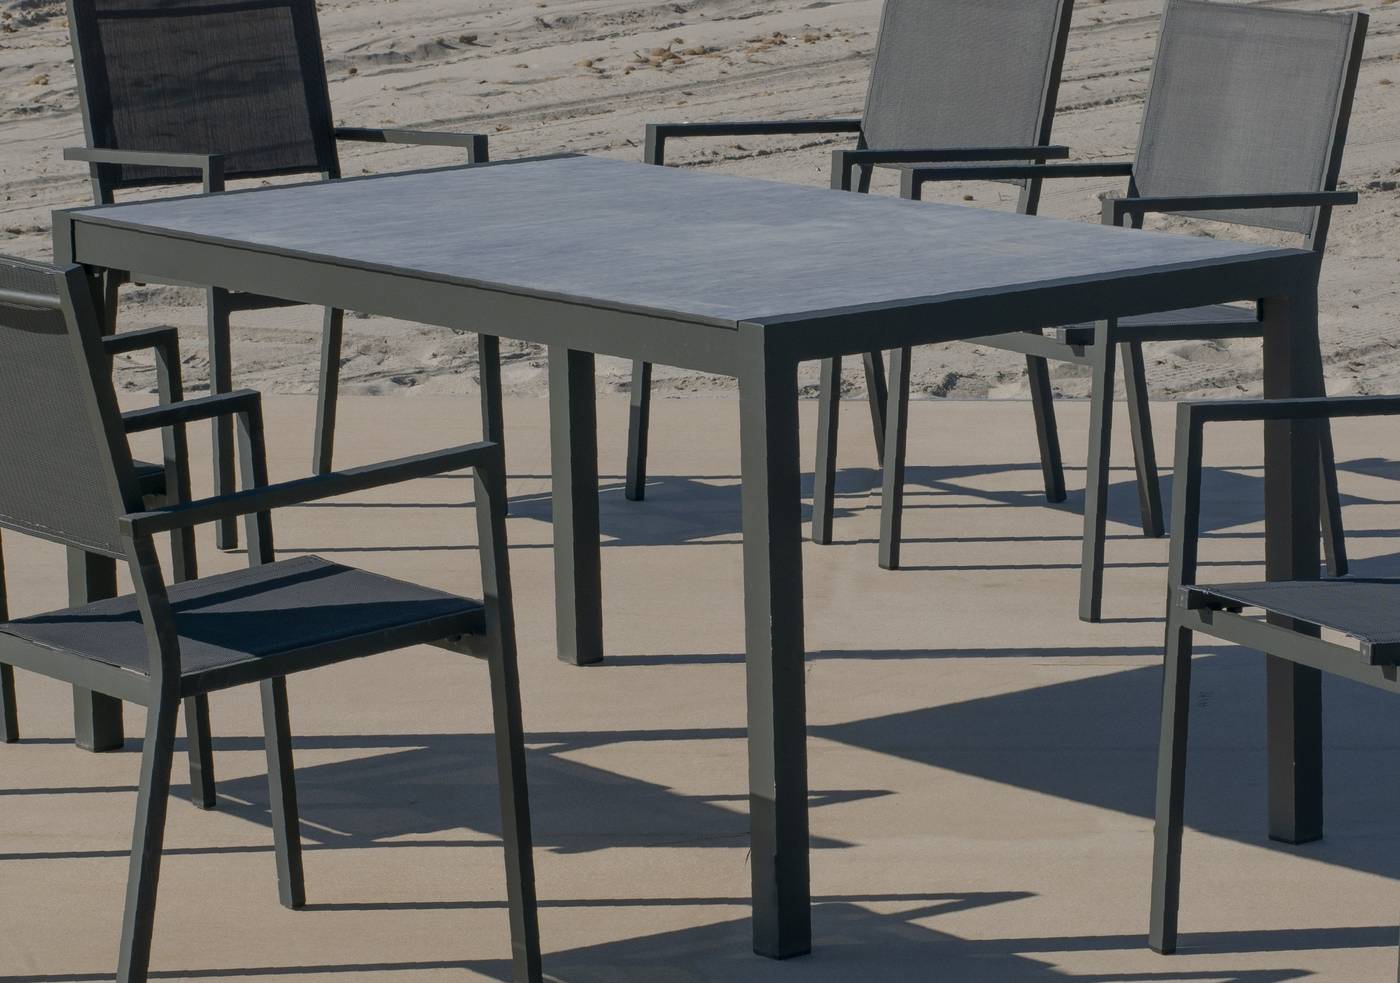 Set Córcega-160-6 Córcega - Conjunto de aluminio para jardín: Mesa rectangular con tablero HPL de 160 cm + 6 sillones de textilen. Colores: blanco y antracita.